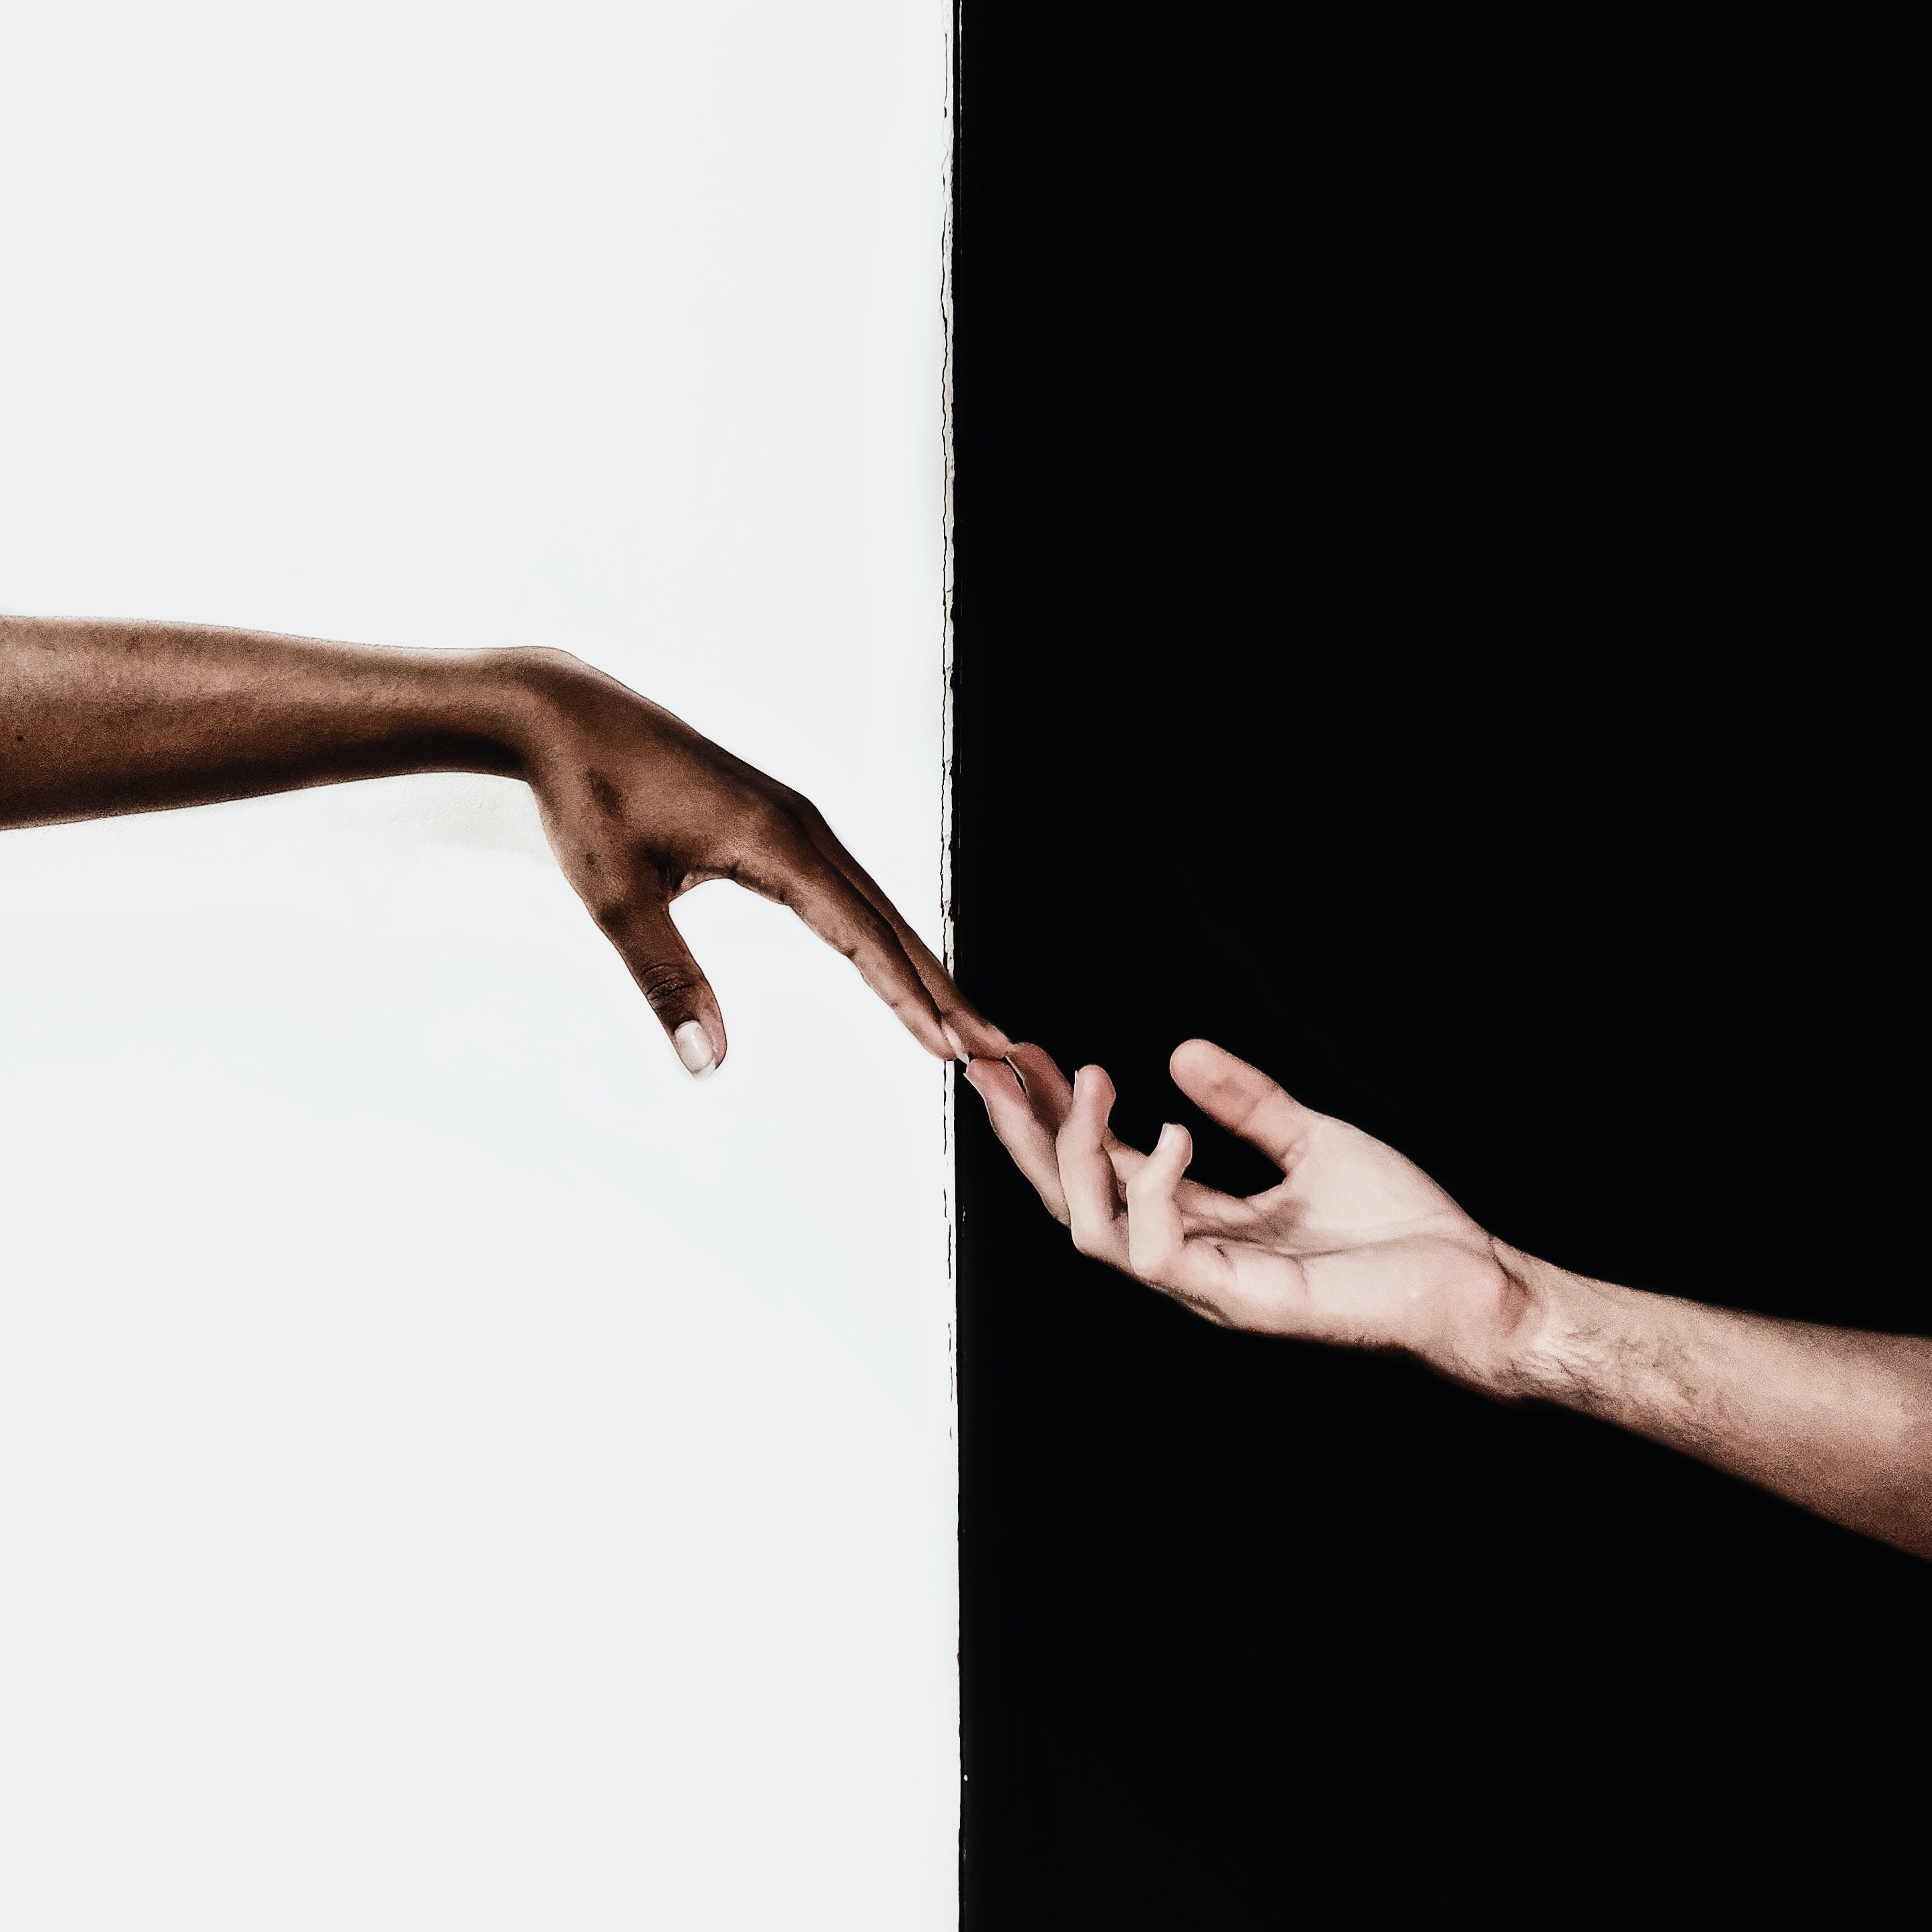 une main féminine rencontre une main masculine sur fond noir et blanc